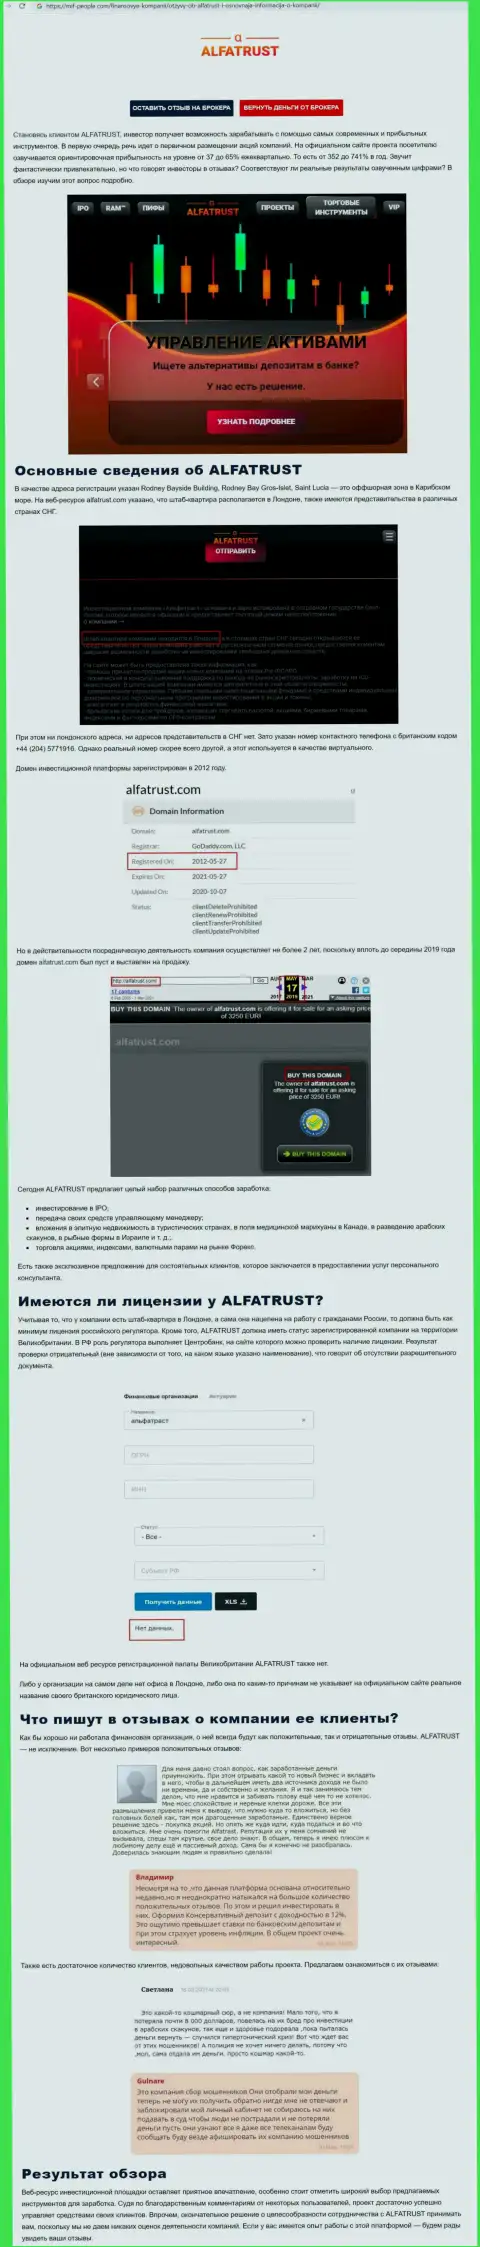 Интернет-портал Миф-Пеопле Ком показал информацию об форекс дилинговой организации ALFATRUST LTD